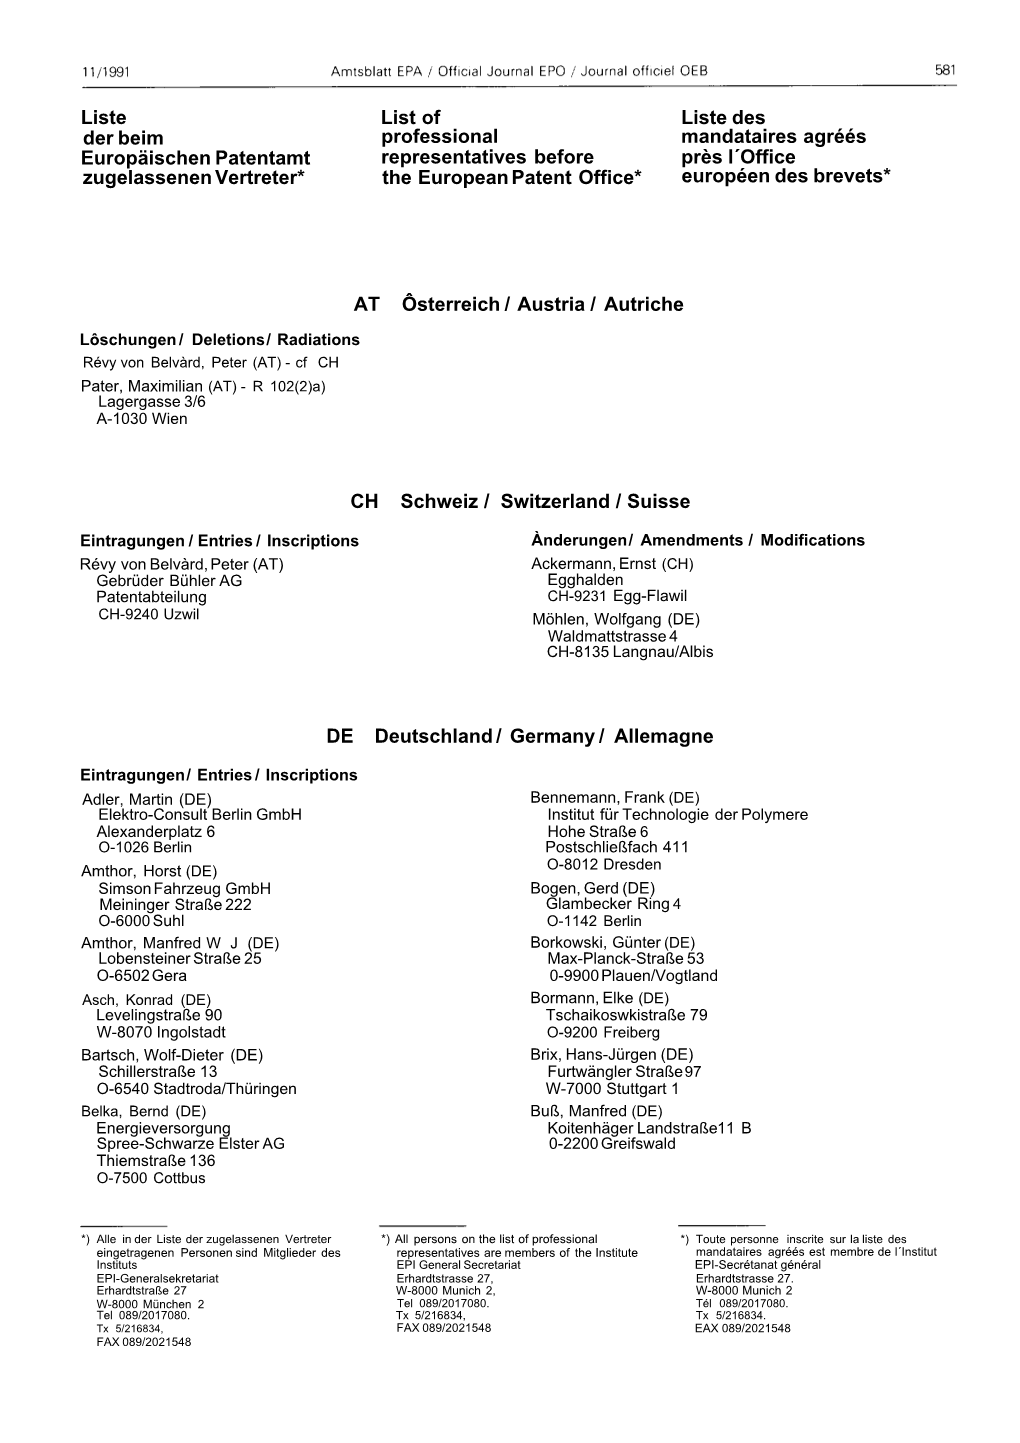 Liste Der Beim Europäischen Patentamt Zugelassenen Vertreter